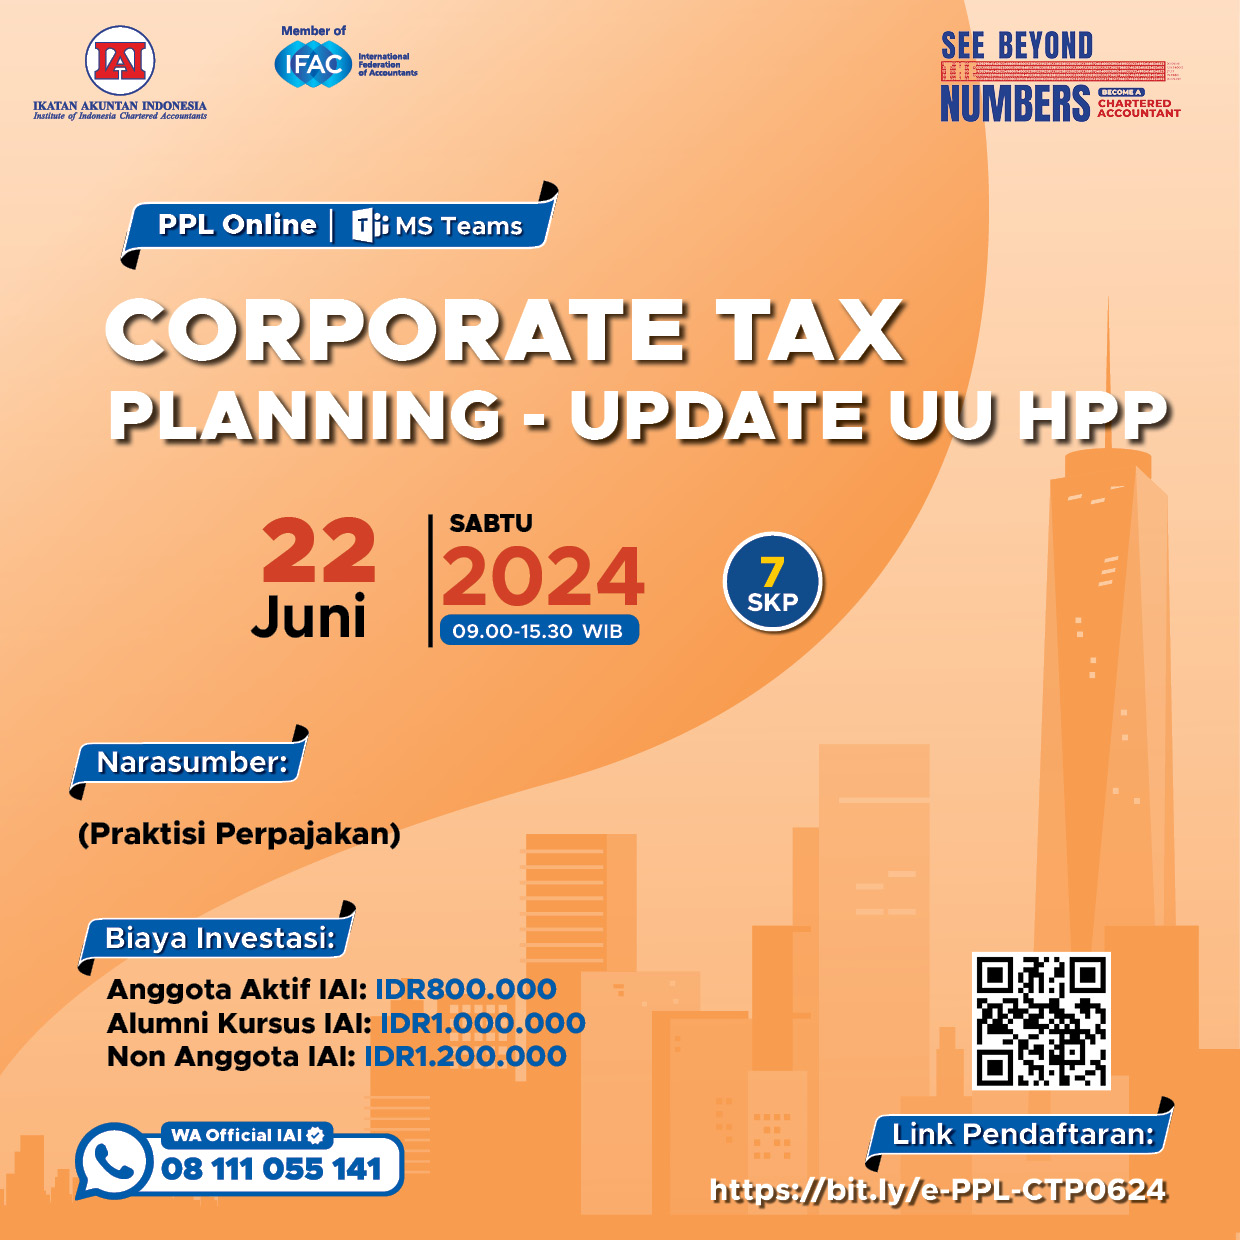 Corporate Tax Planning - Update UU HPP